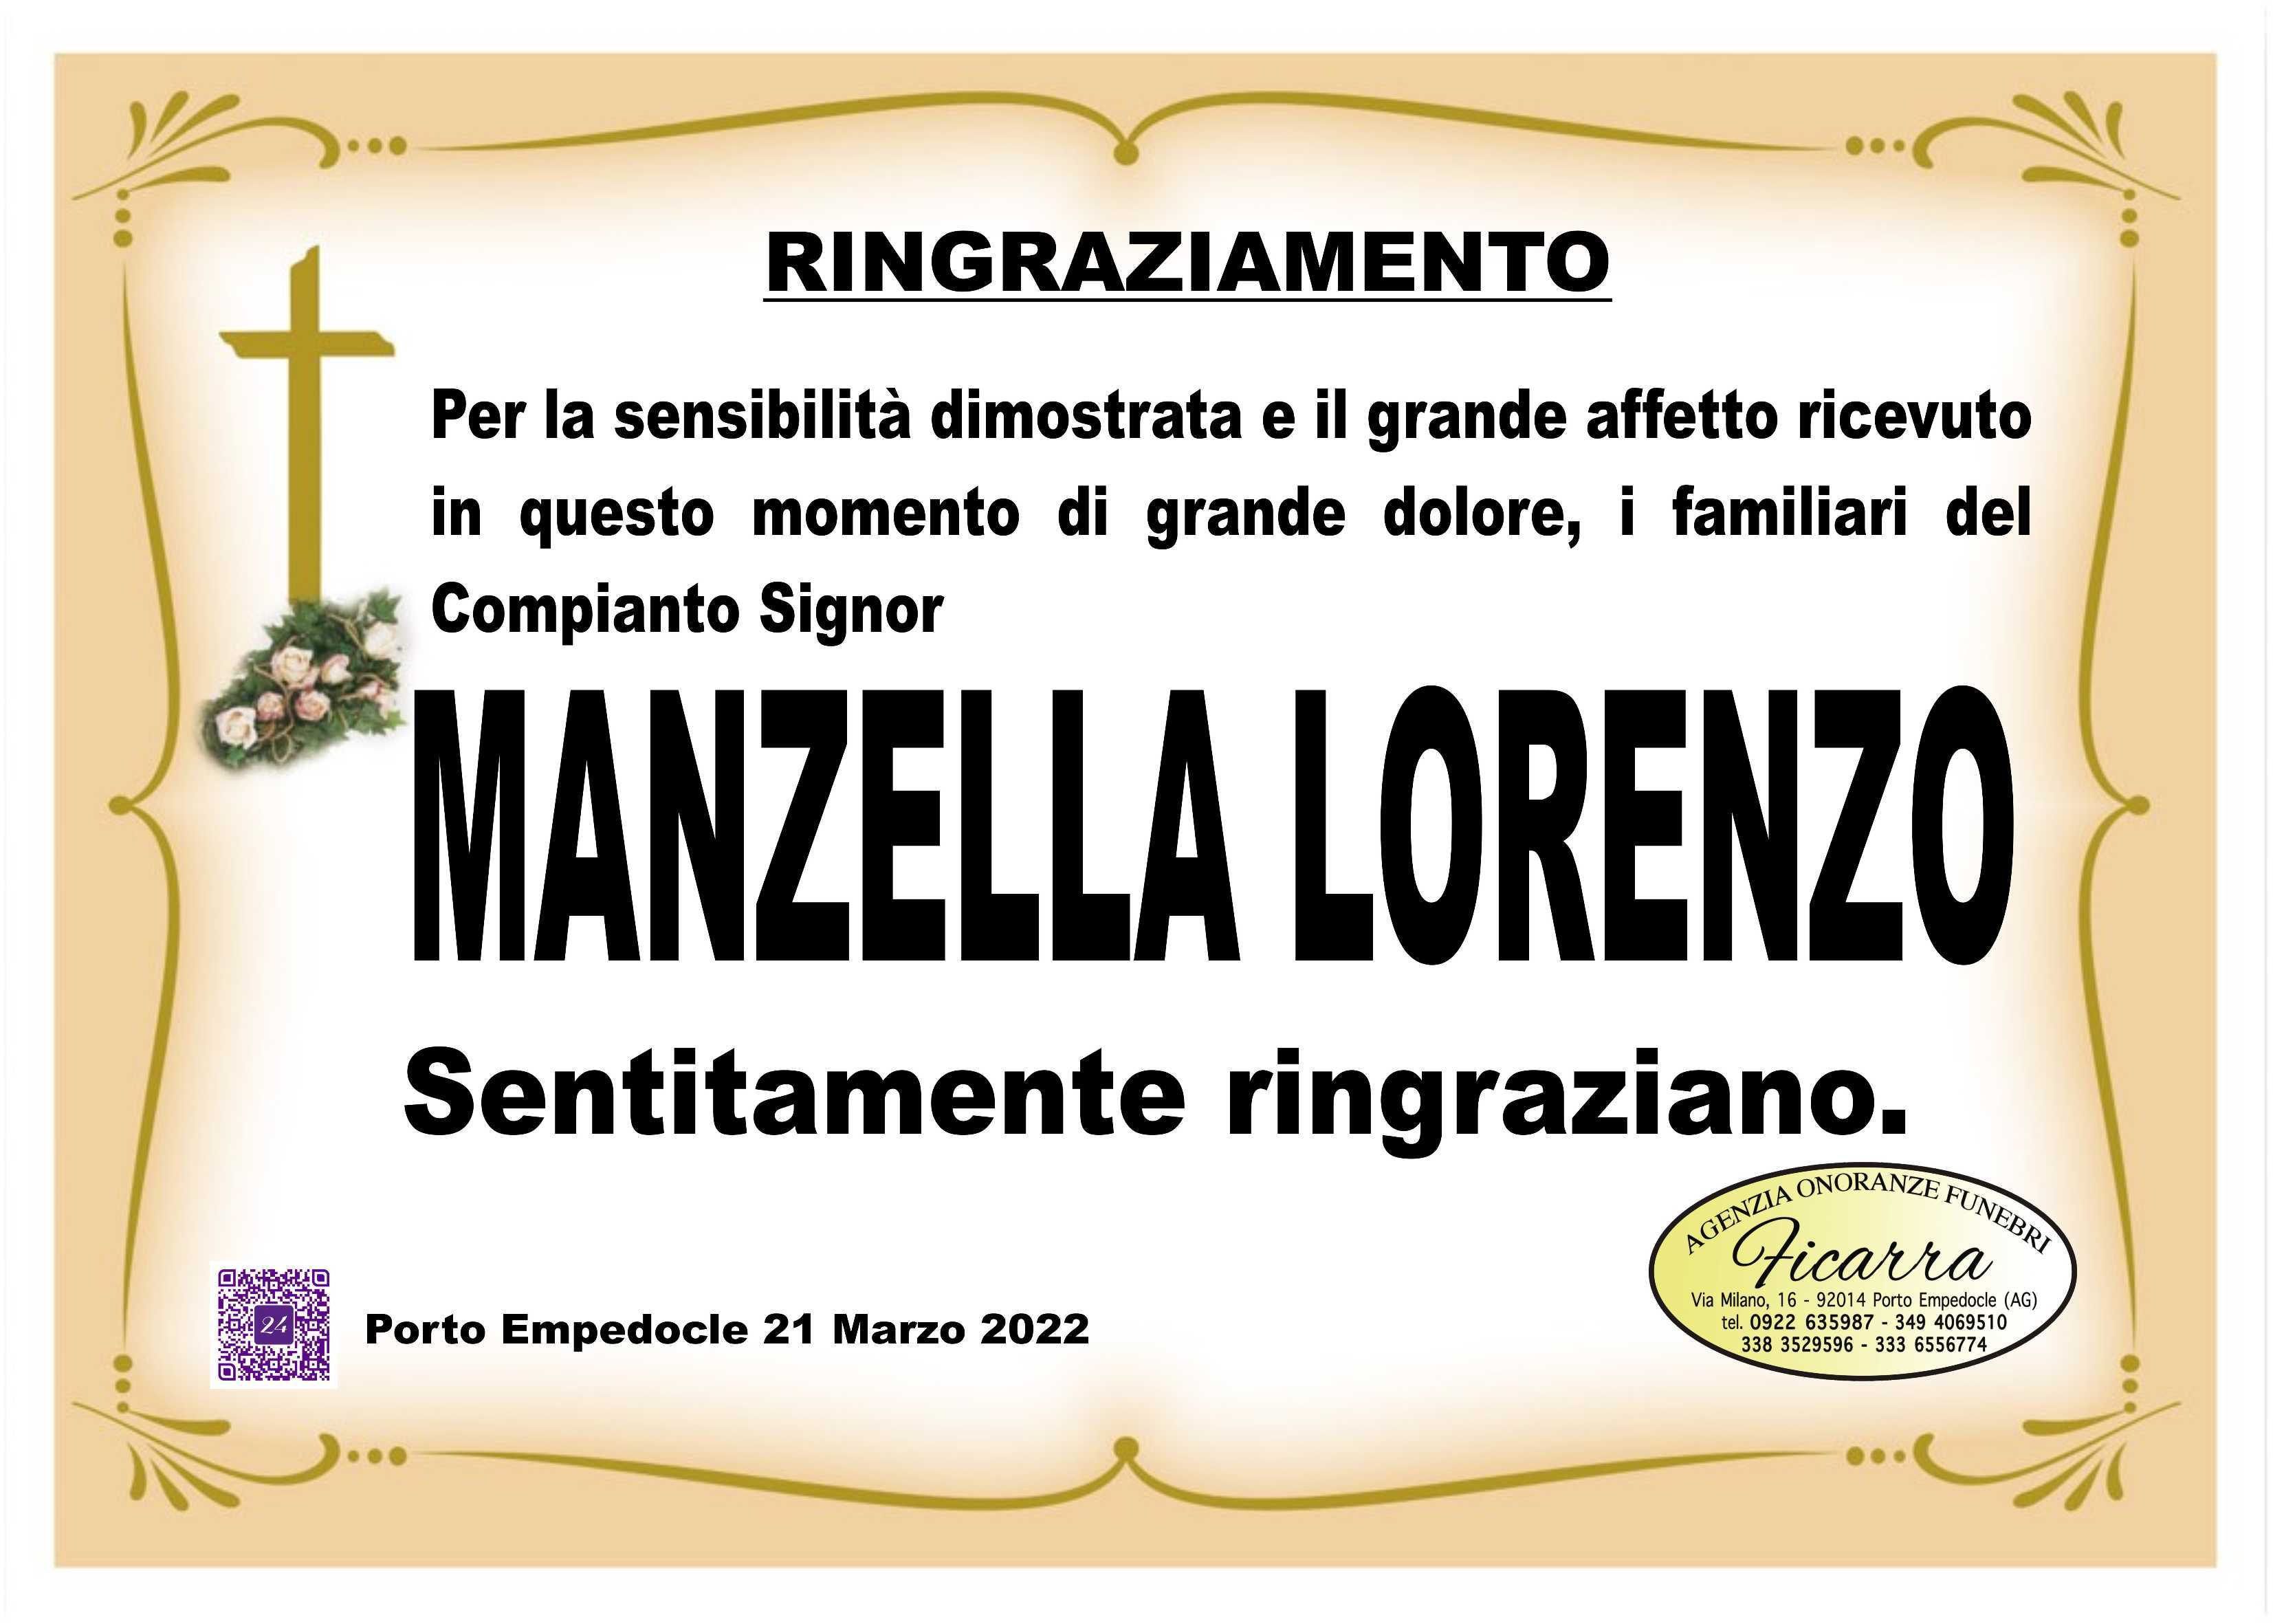 Lorenzo Manzella